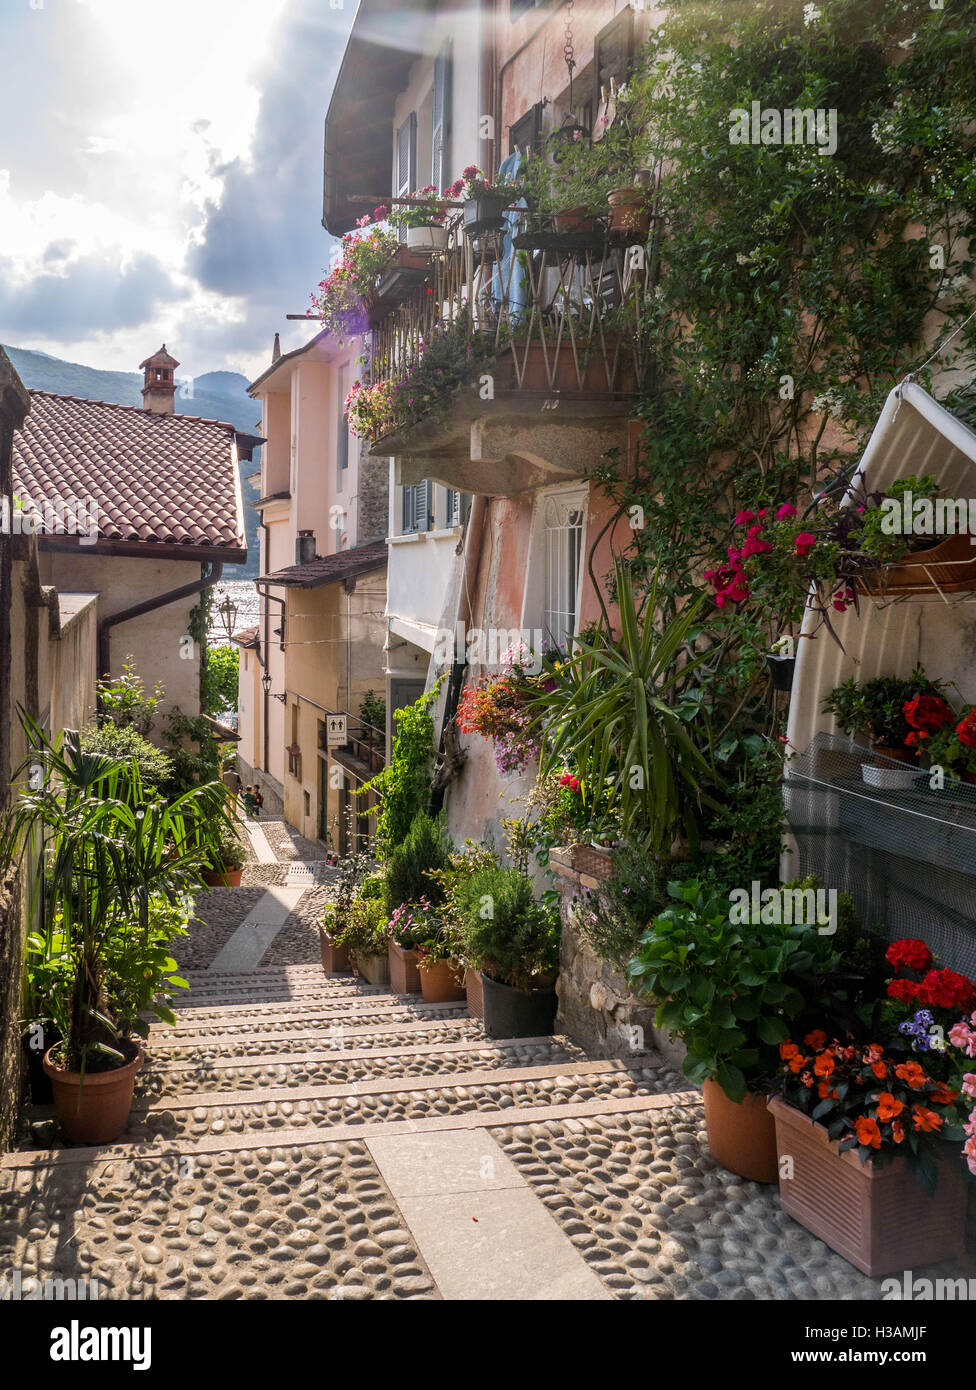 Rues étroites italien capturé pendant l'été quand toutes les fleurs s'épanouir et de rues vides. vieux et maisons historiques où les gens sont encore livin Banque D'Images